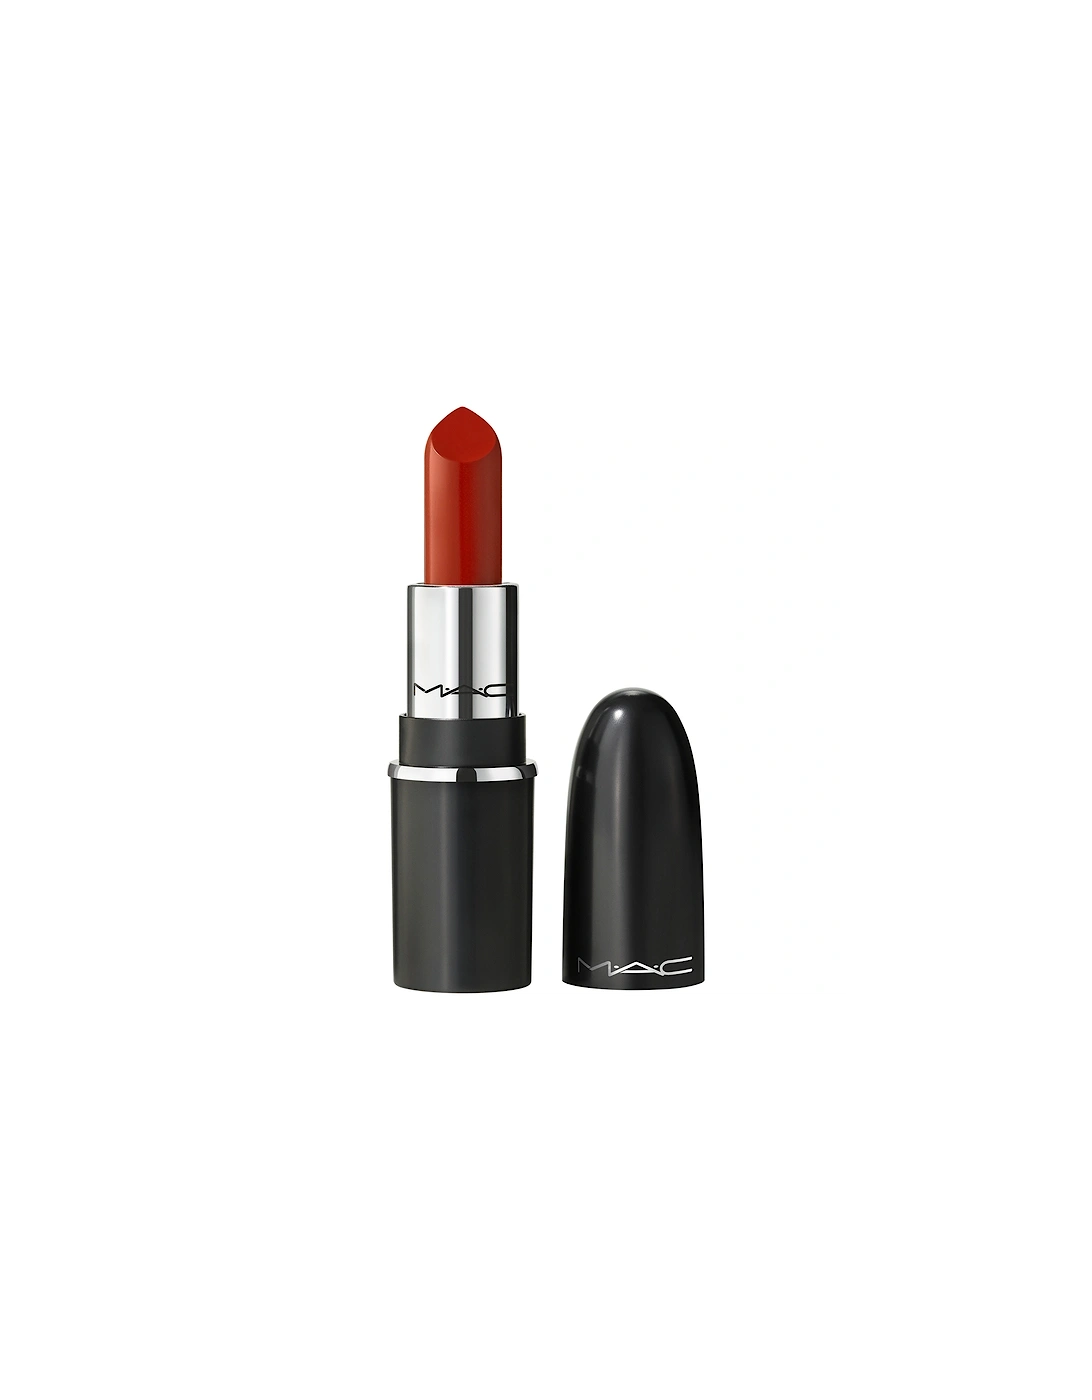 Macximal Silky Matte Mini Lipstick - Chili, 2 of 1